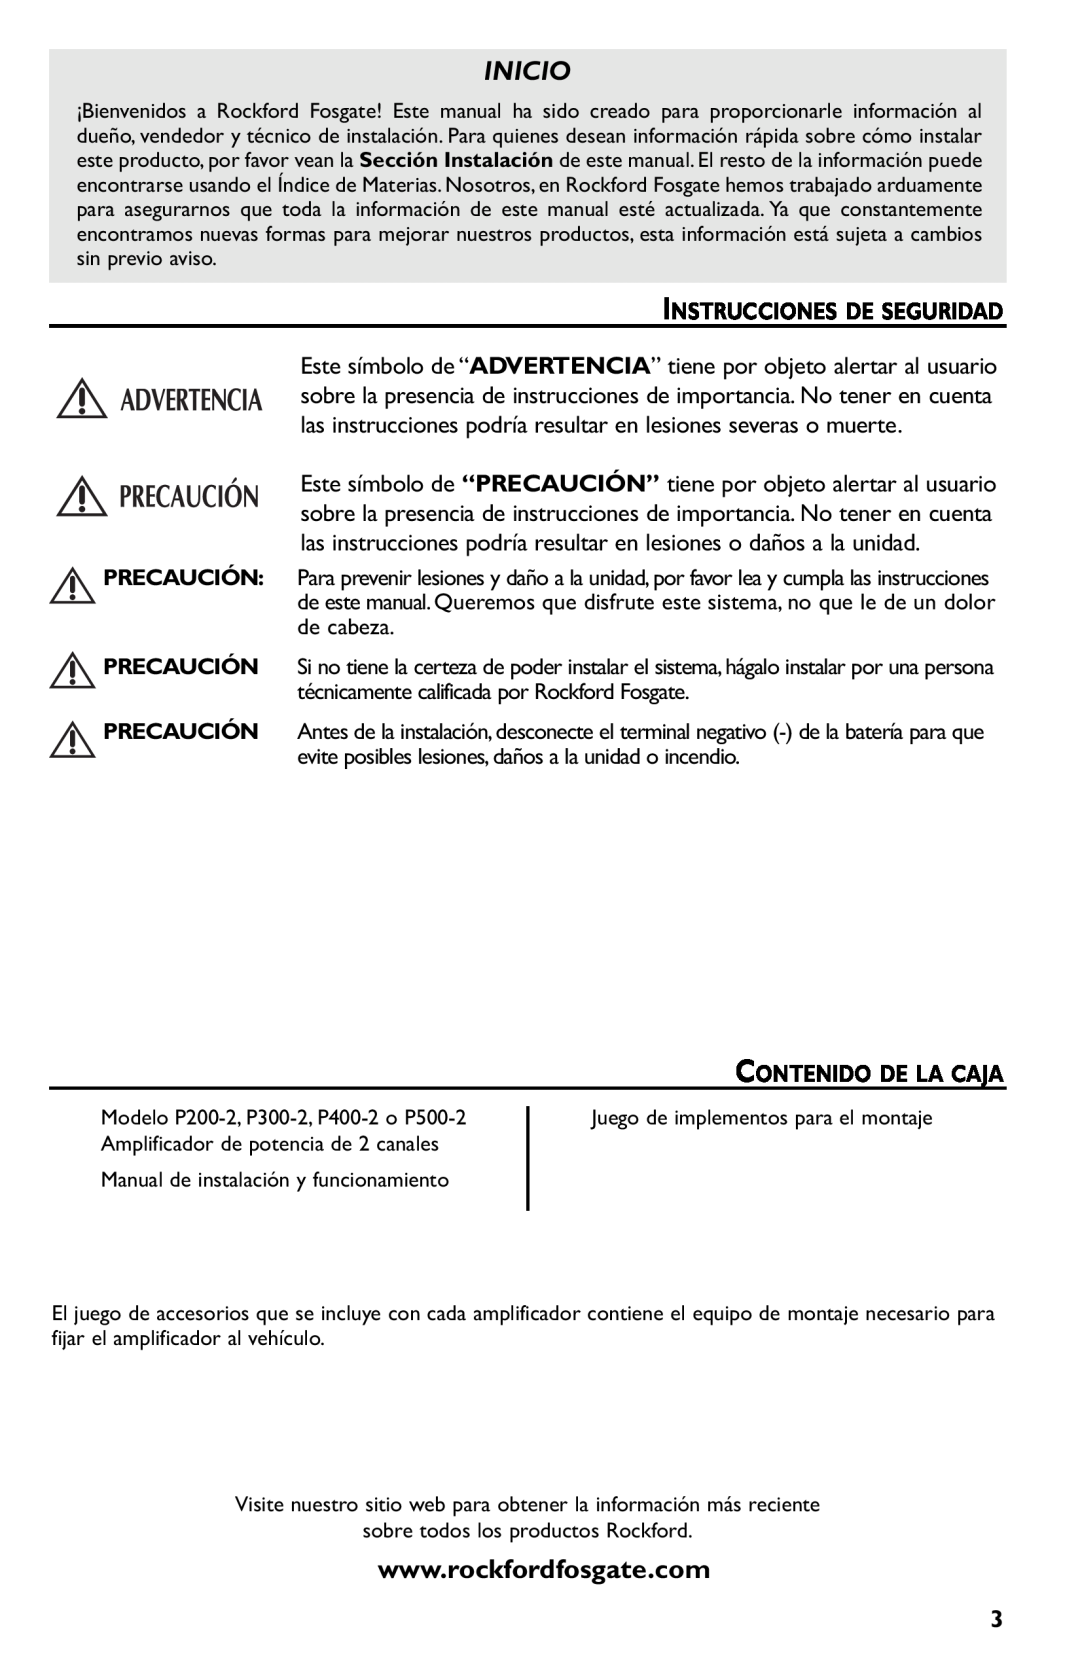 Rockford Fosgate p3002 manual Inicio, Instrucciones De Seguridad, Contenido De La Caja 